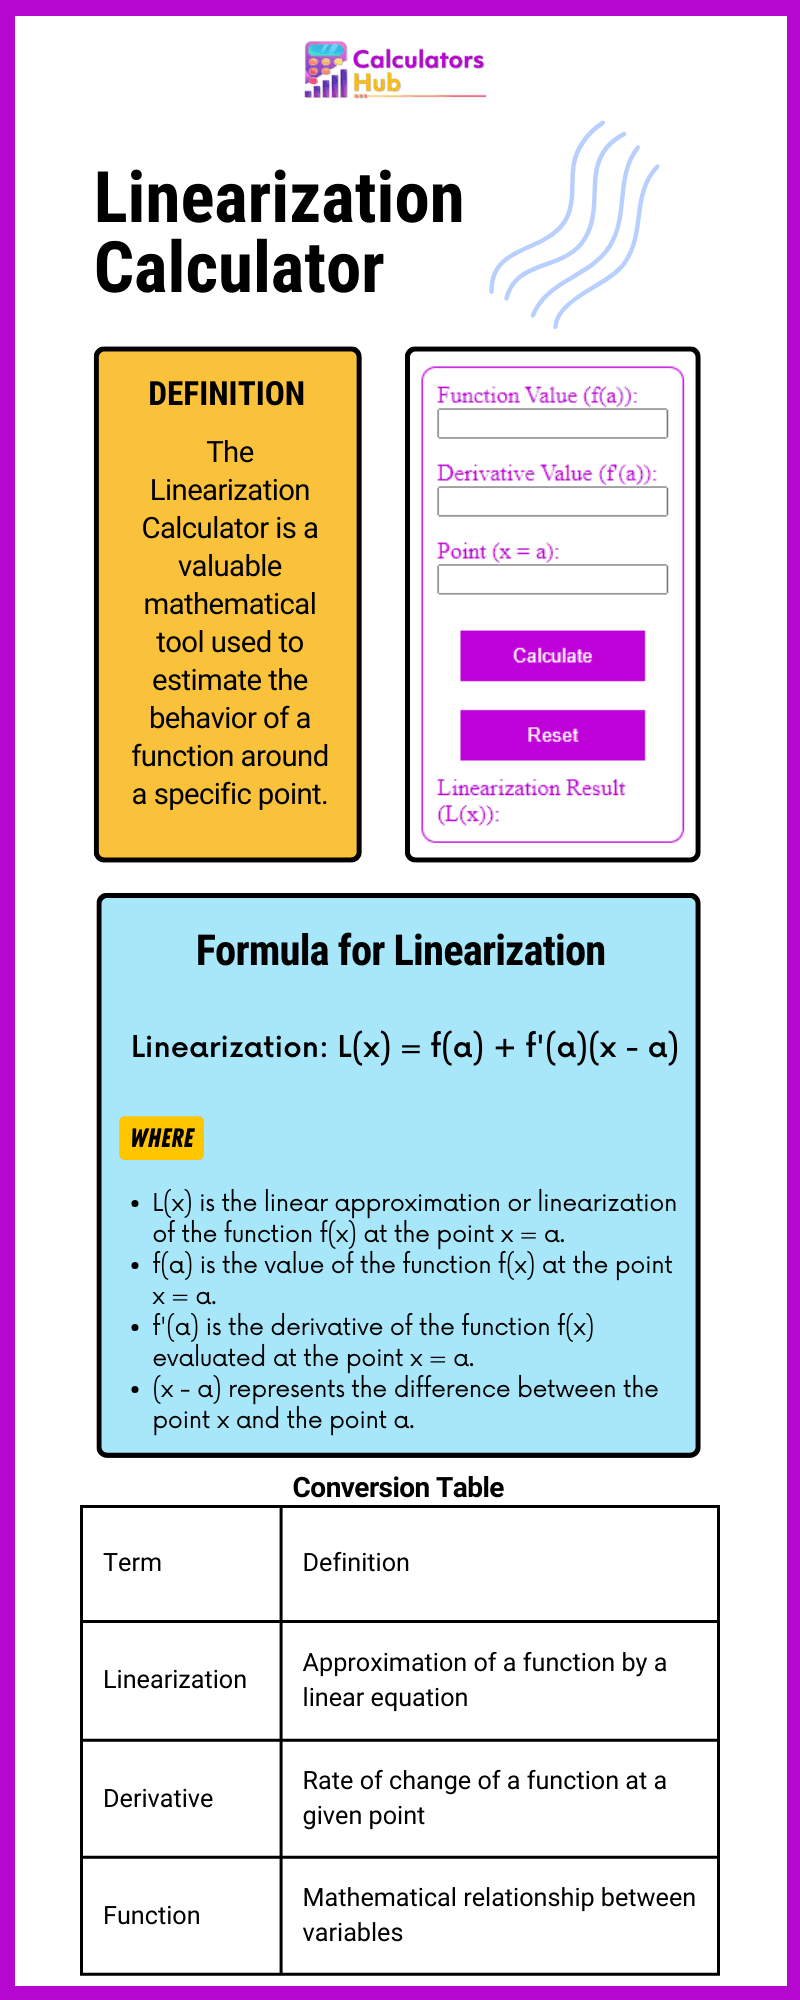 Linearization Calculator